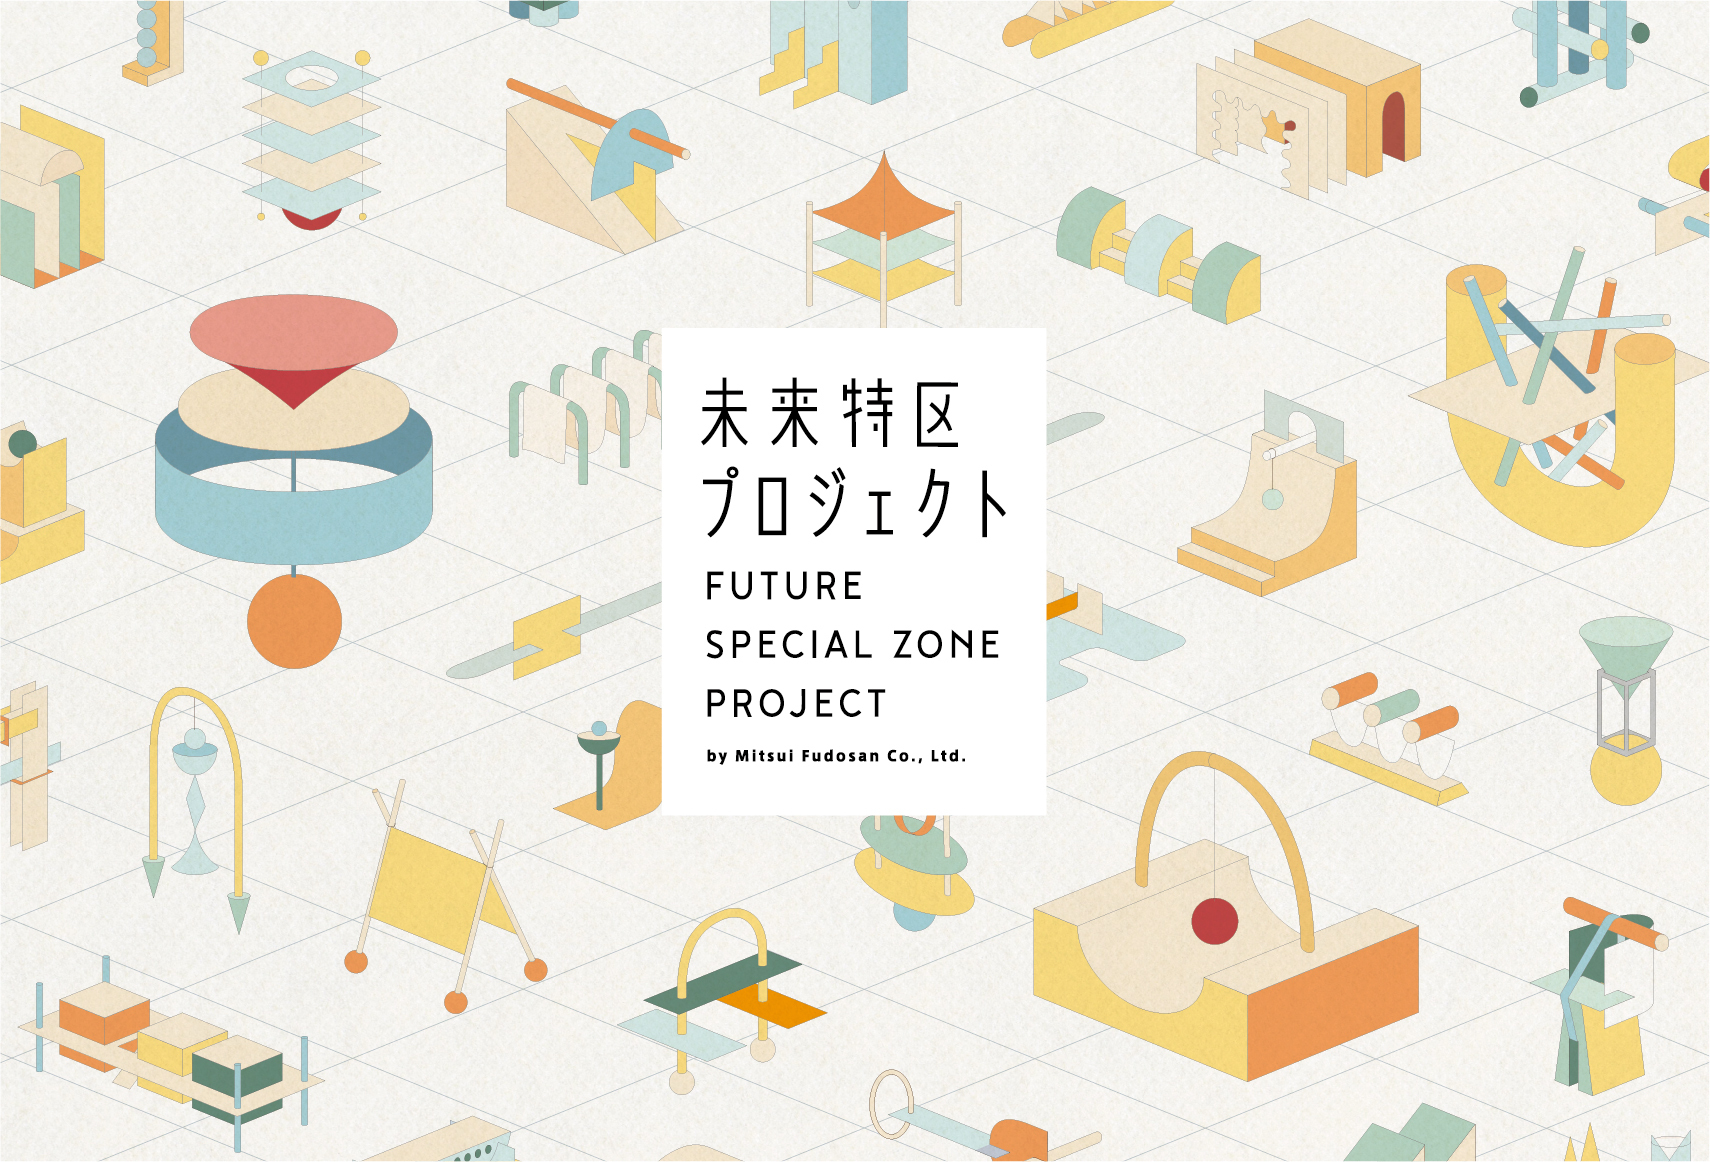 三井不動産創立80周年記念事業「未来特区プロジェクト」におけるクリエイター特区のアイデア一般募集が開始